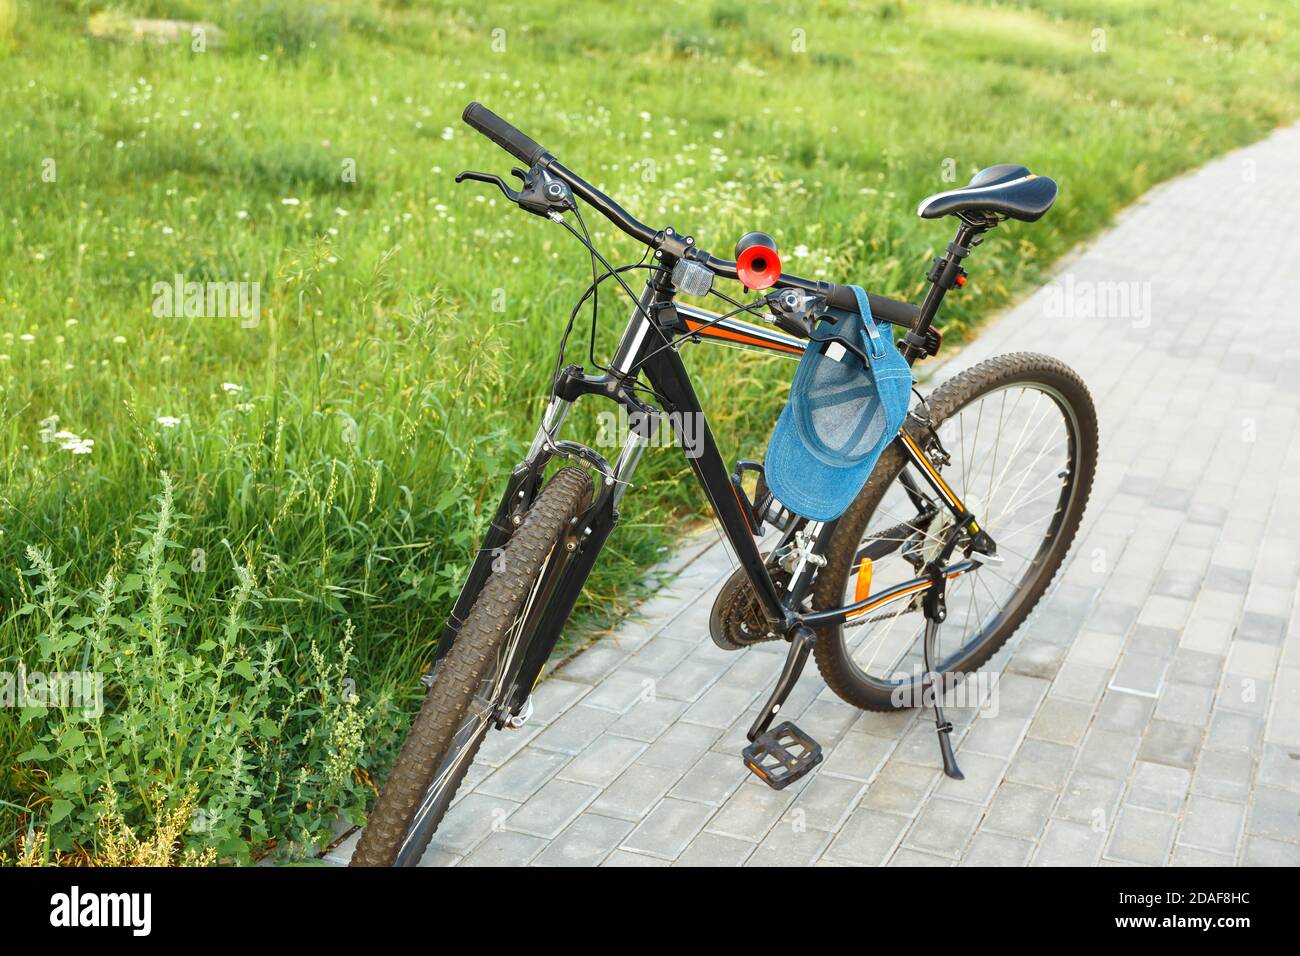 Niño Con Gafas Monta Bicicleta En El Parque De Otoño Y Mira La Cámara.  Marco Vertical Imagen de archivo - Imagen de lluvioso, colorido: 232373779